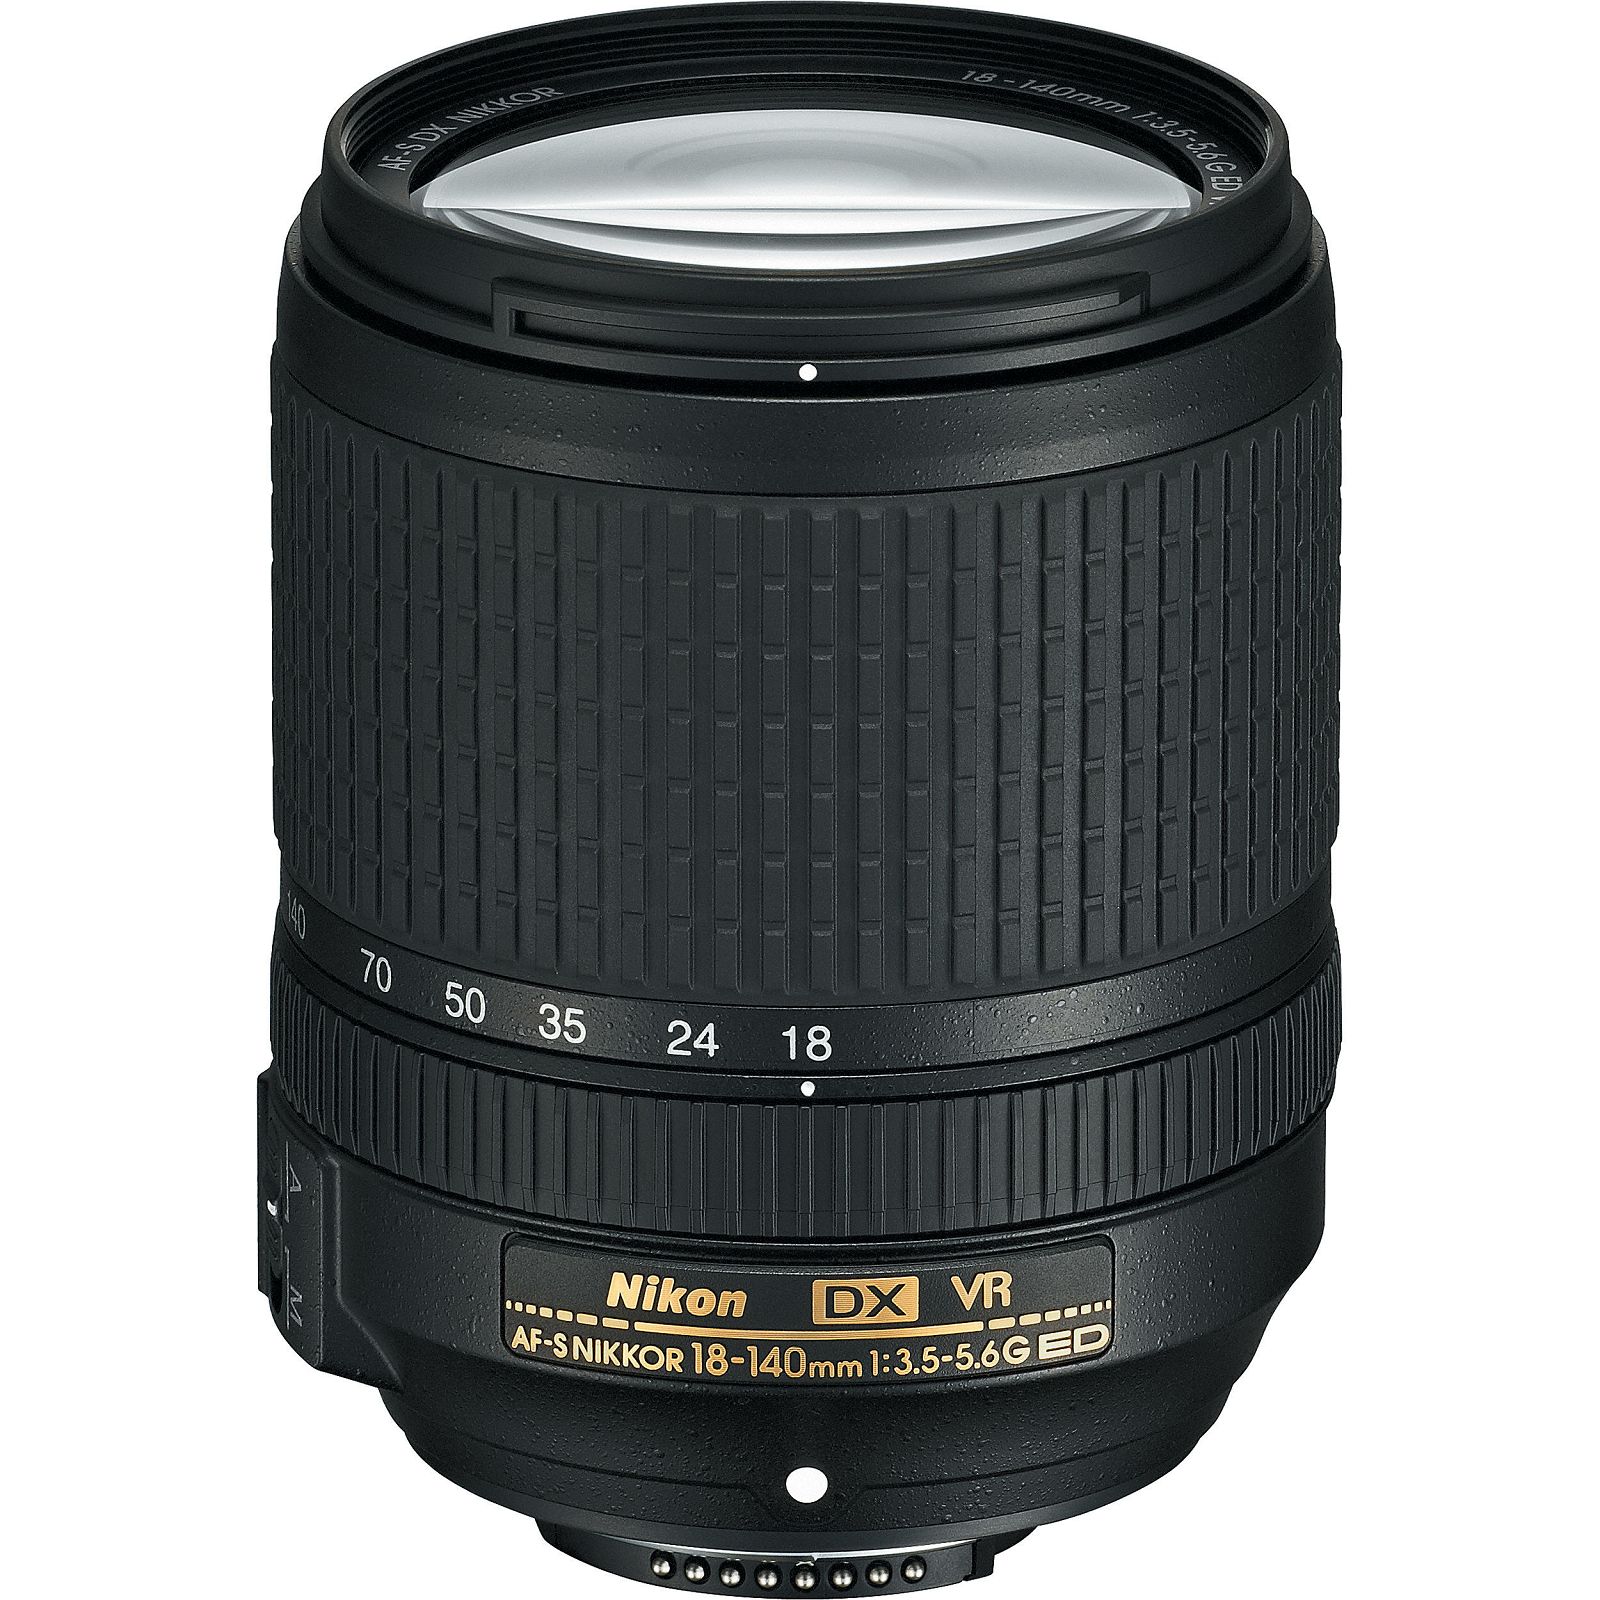 Nikon D7100 + 18-140VR DSLR digitalni fotoaparat s objektivom 18-140mm f/3.5-5.6G ED VR (VBA360K002)